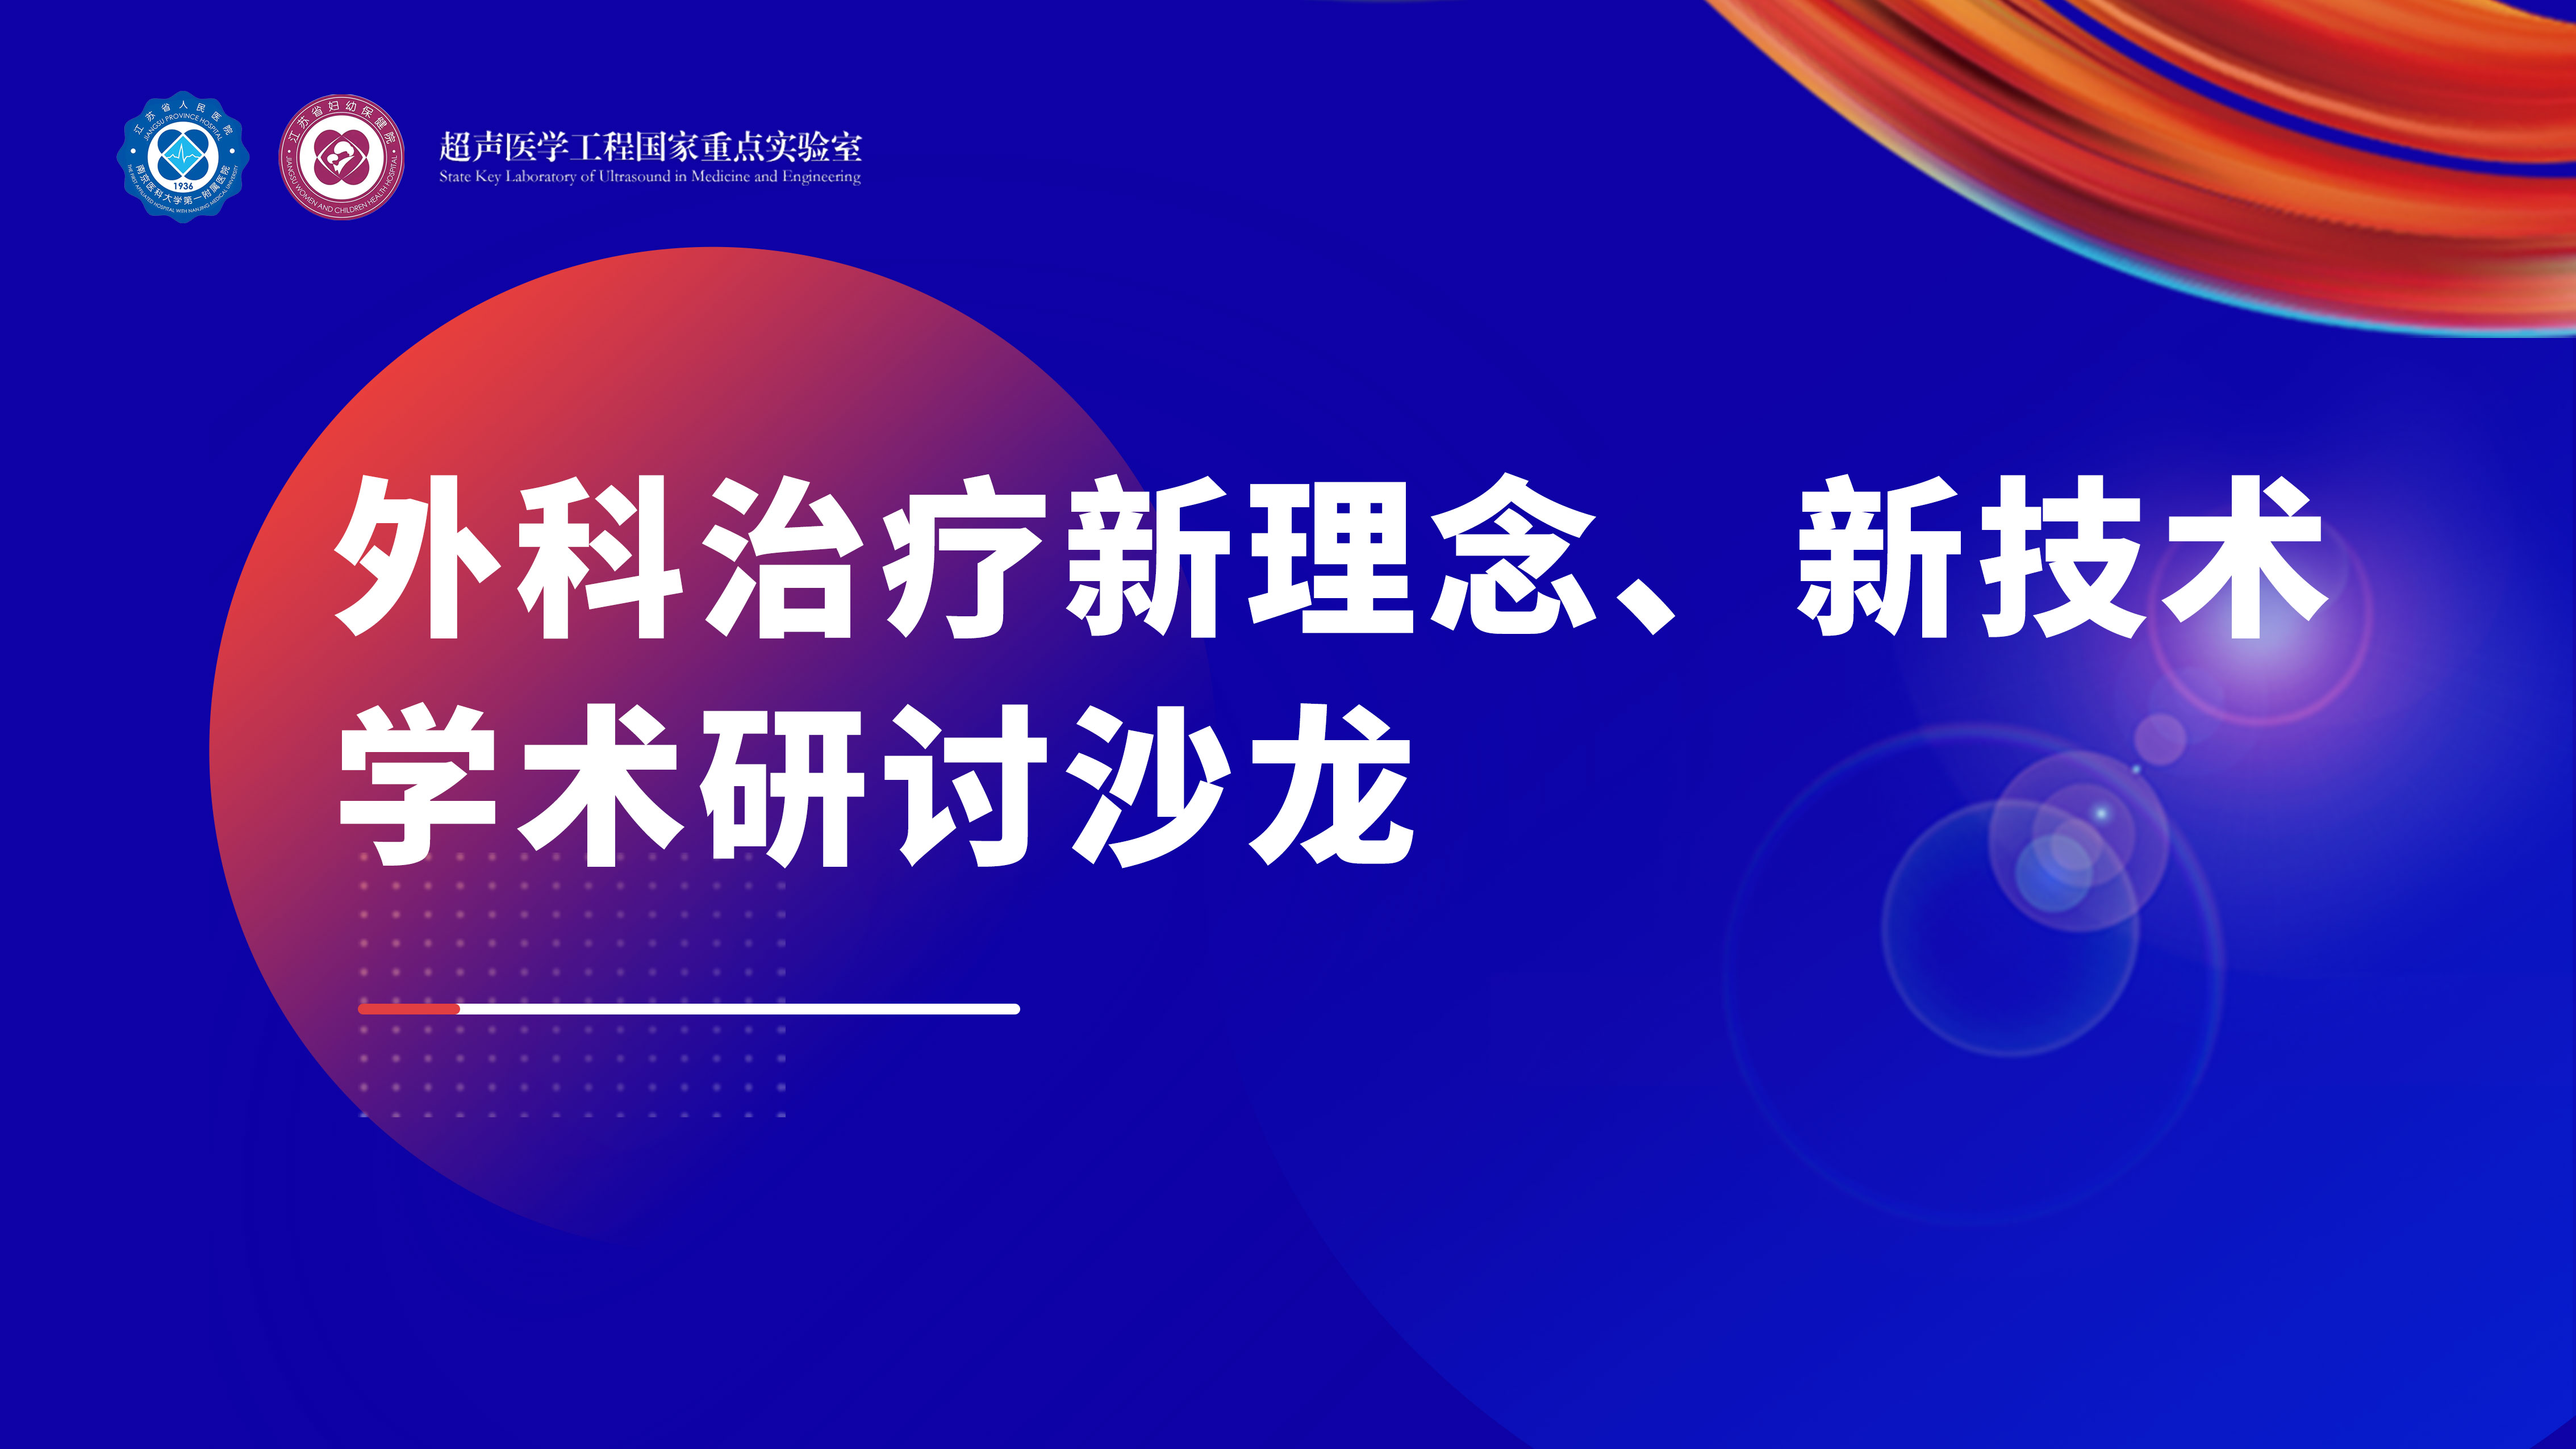 江苏省人民医院“乳腺外科治疗新理念、新技术学术沙龙”圆满举行